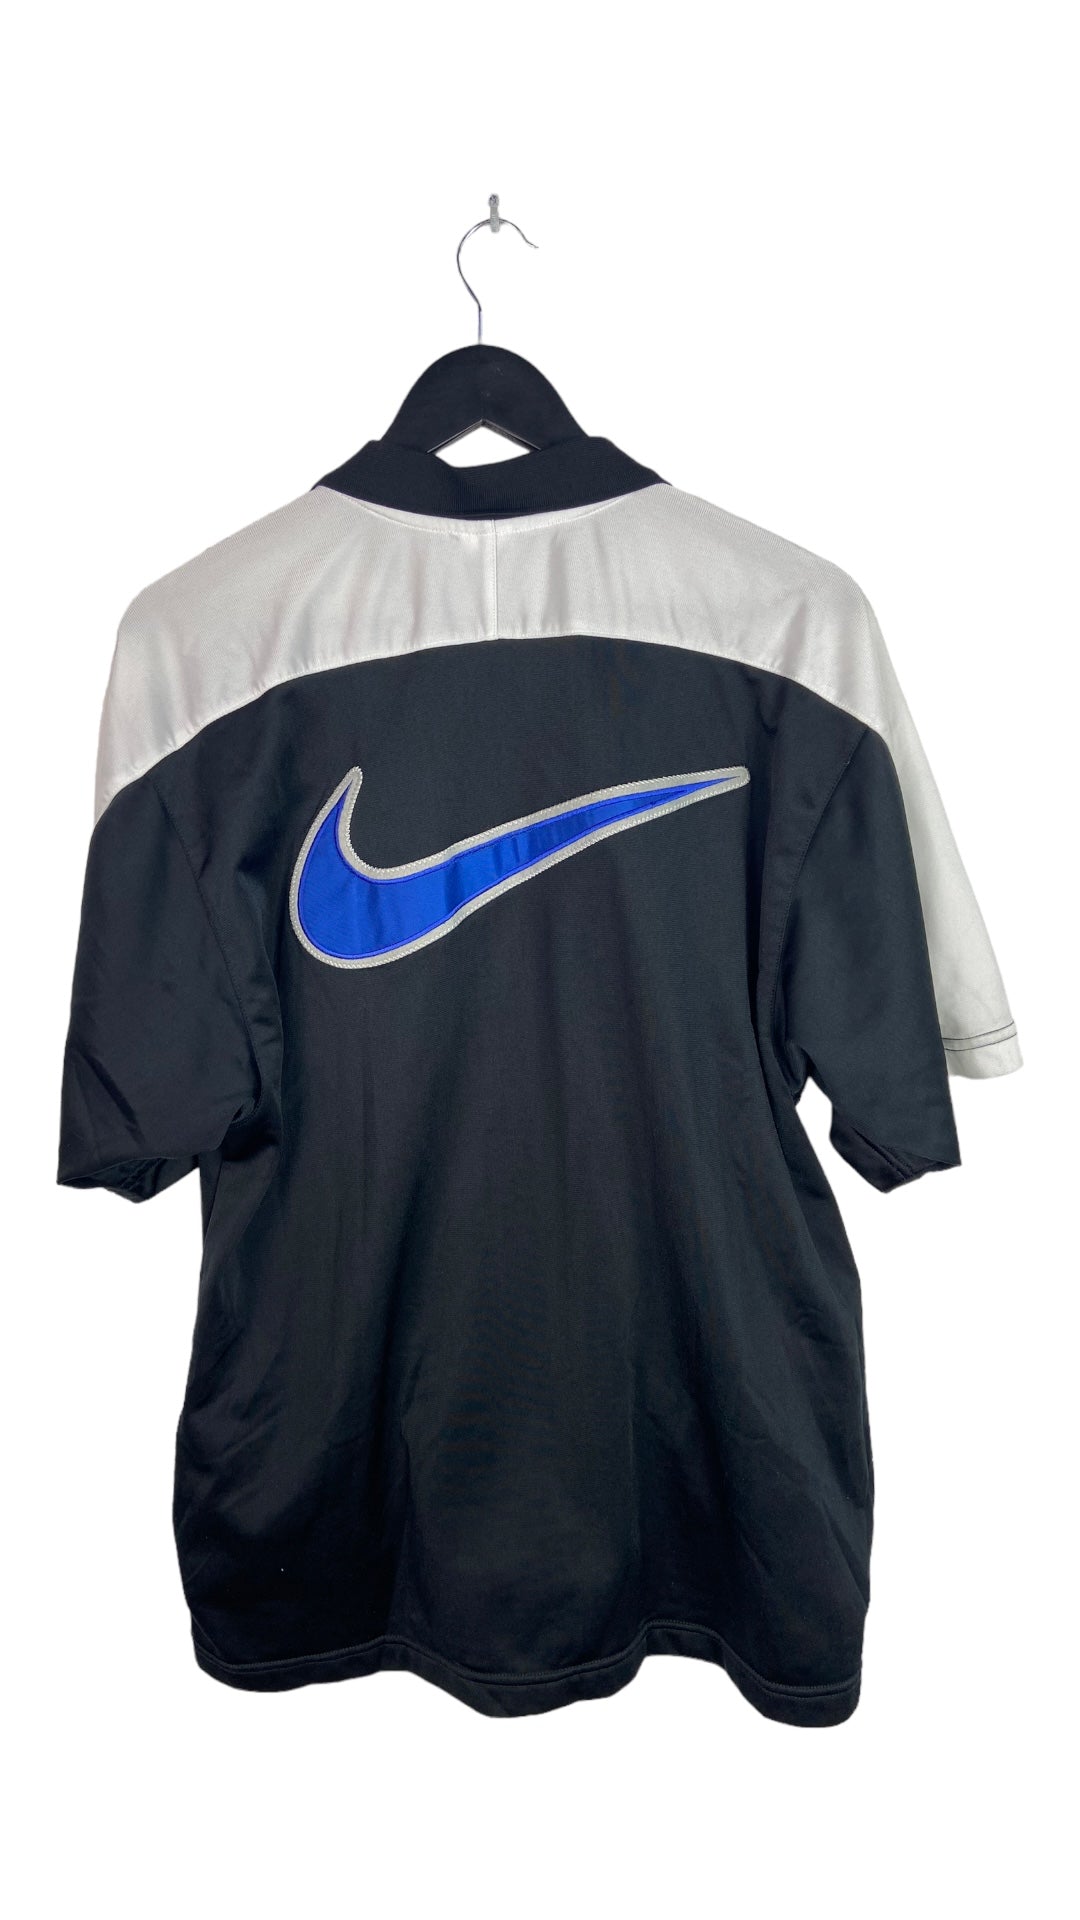 VTG Nike Short Sleeve Zip-Up Jacket Sz L